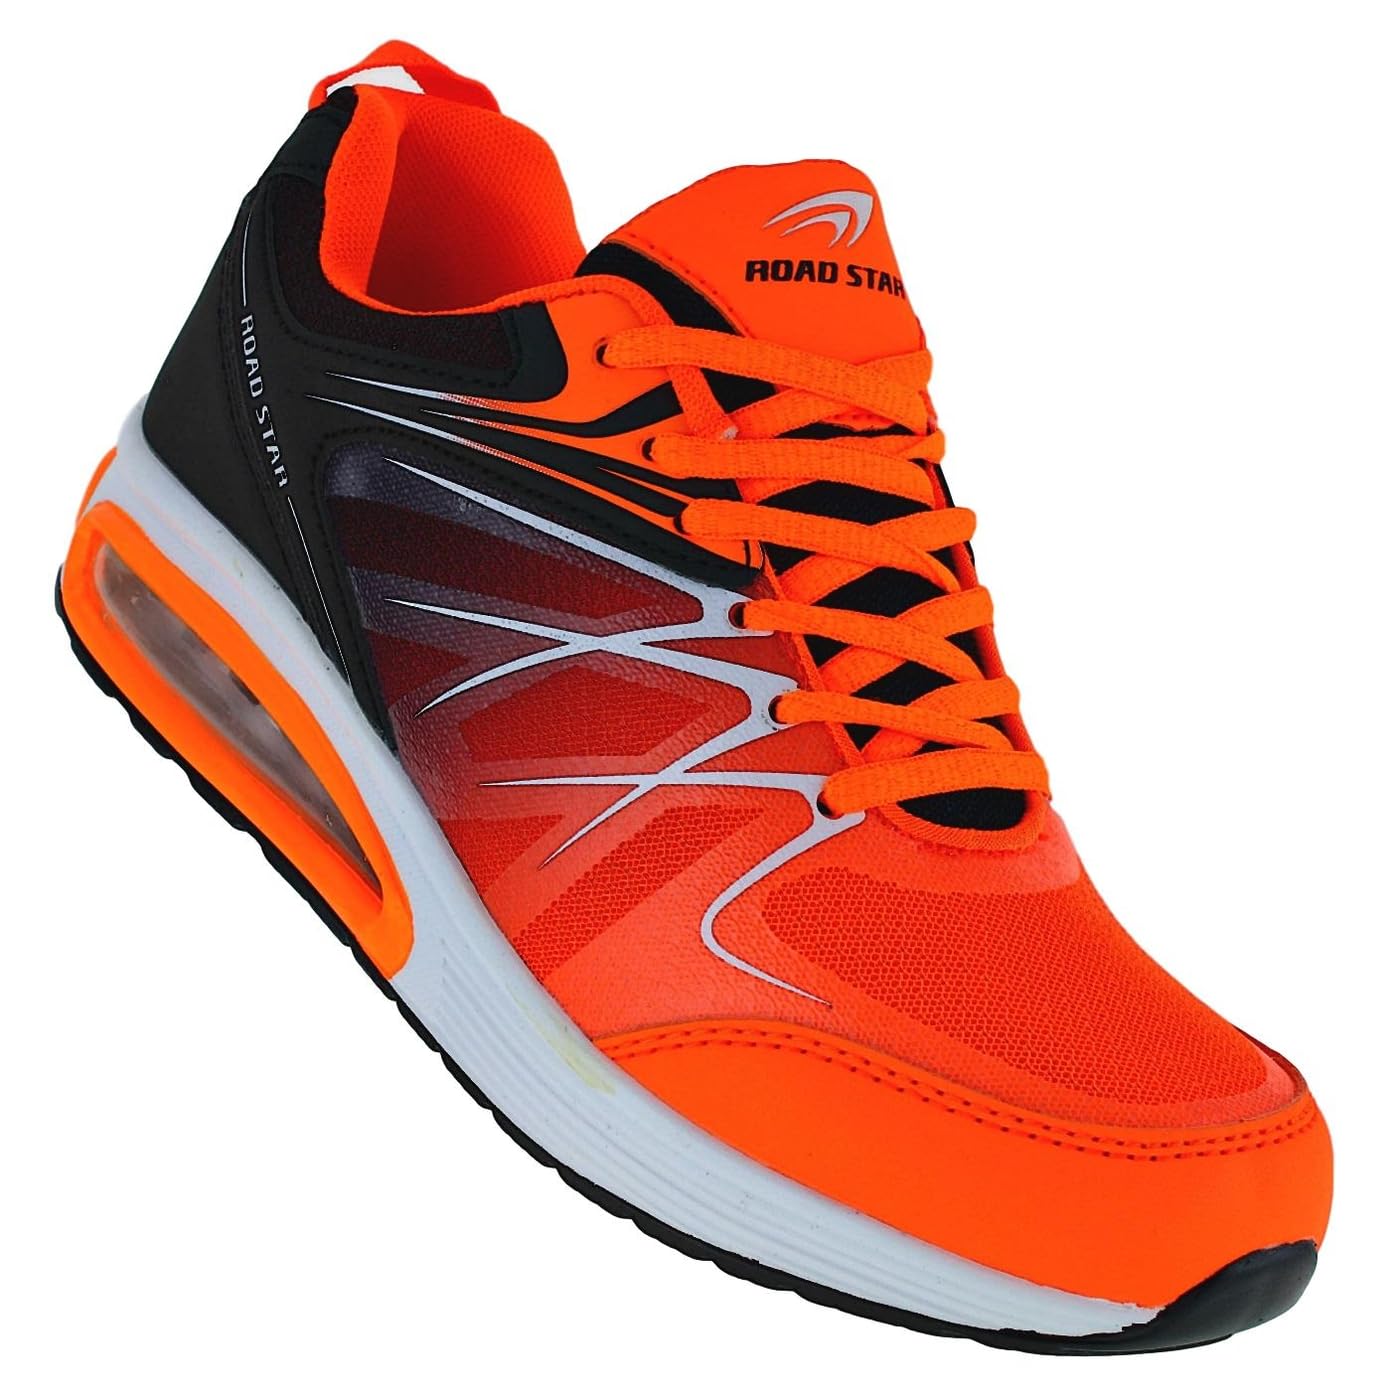 Bootsland Neon Herren Turnschuhe Sneaker Sportschuhe Freizeitschuhe 067, Schuhgröße:45, Farbe:Orange/Schwarz